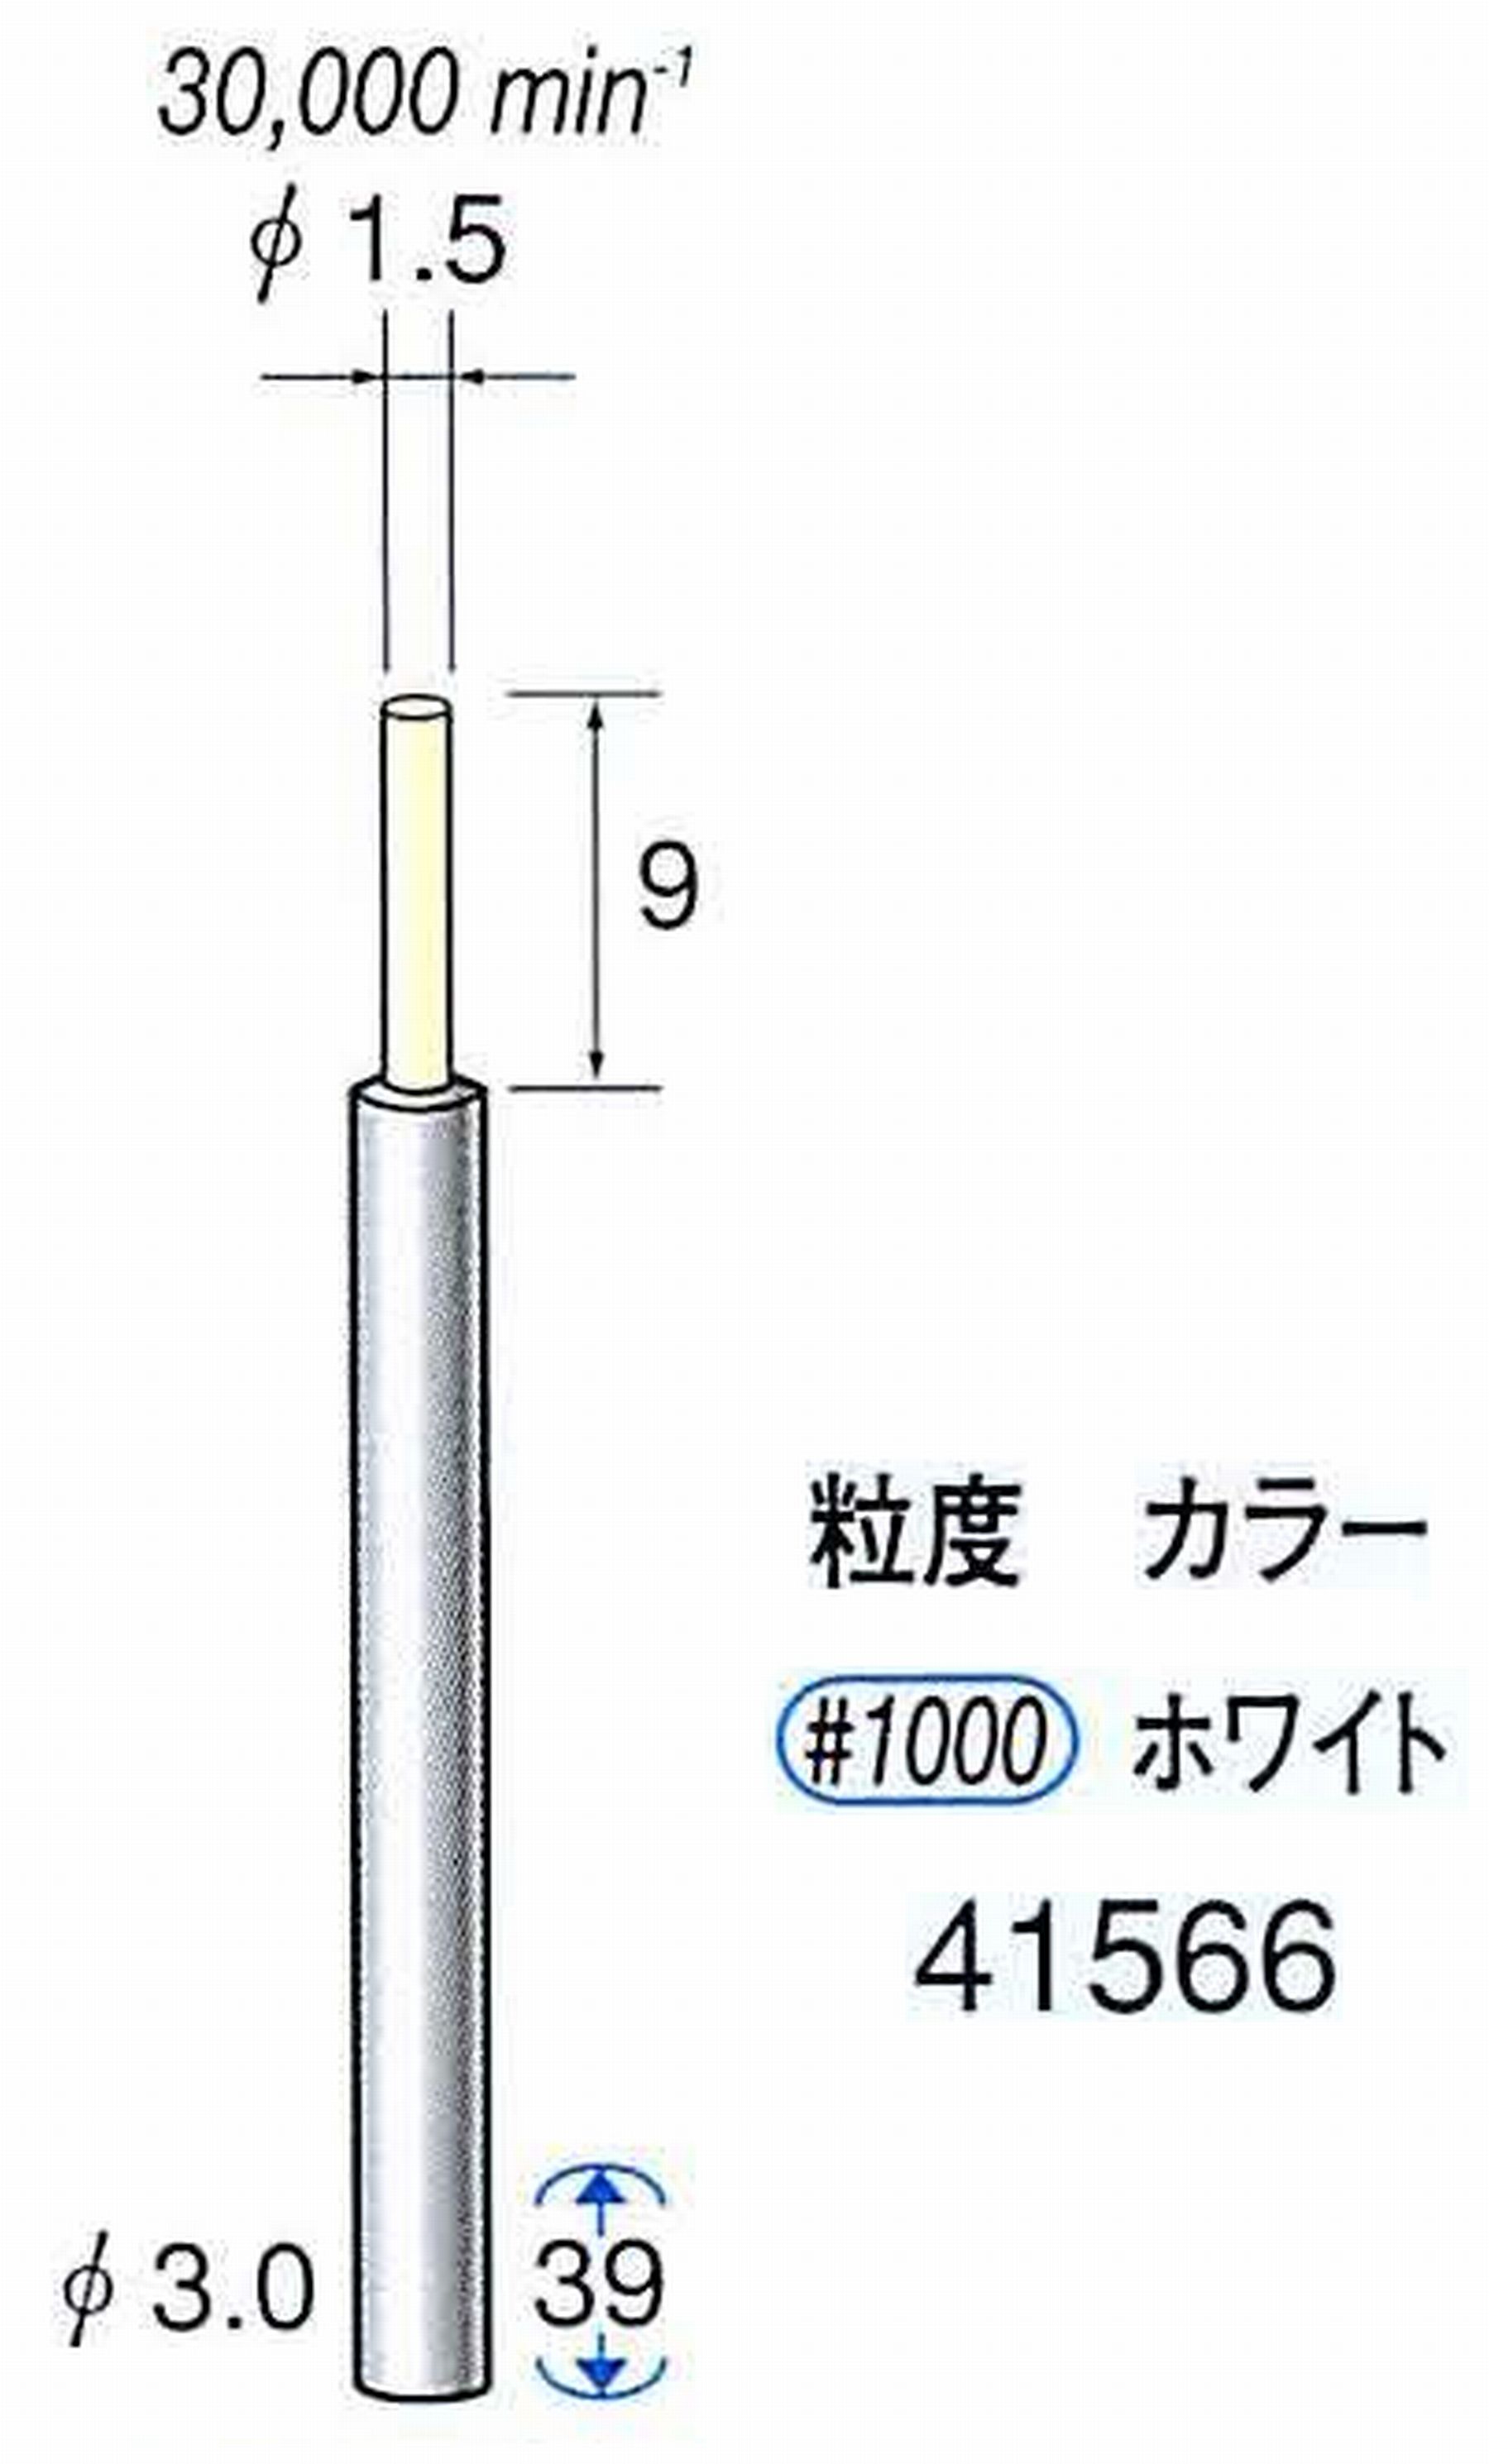 ナカニシ/NAKANISHI セラファイバー精密軸付砥石(カラー ホワイト) 軸径(シャンク) φ3.0mm 41566